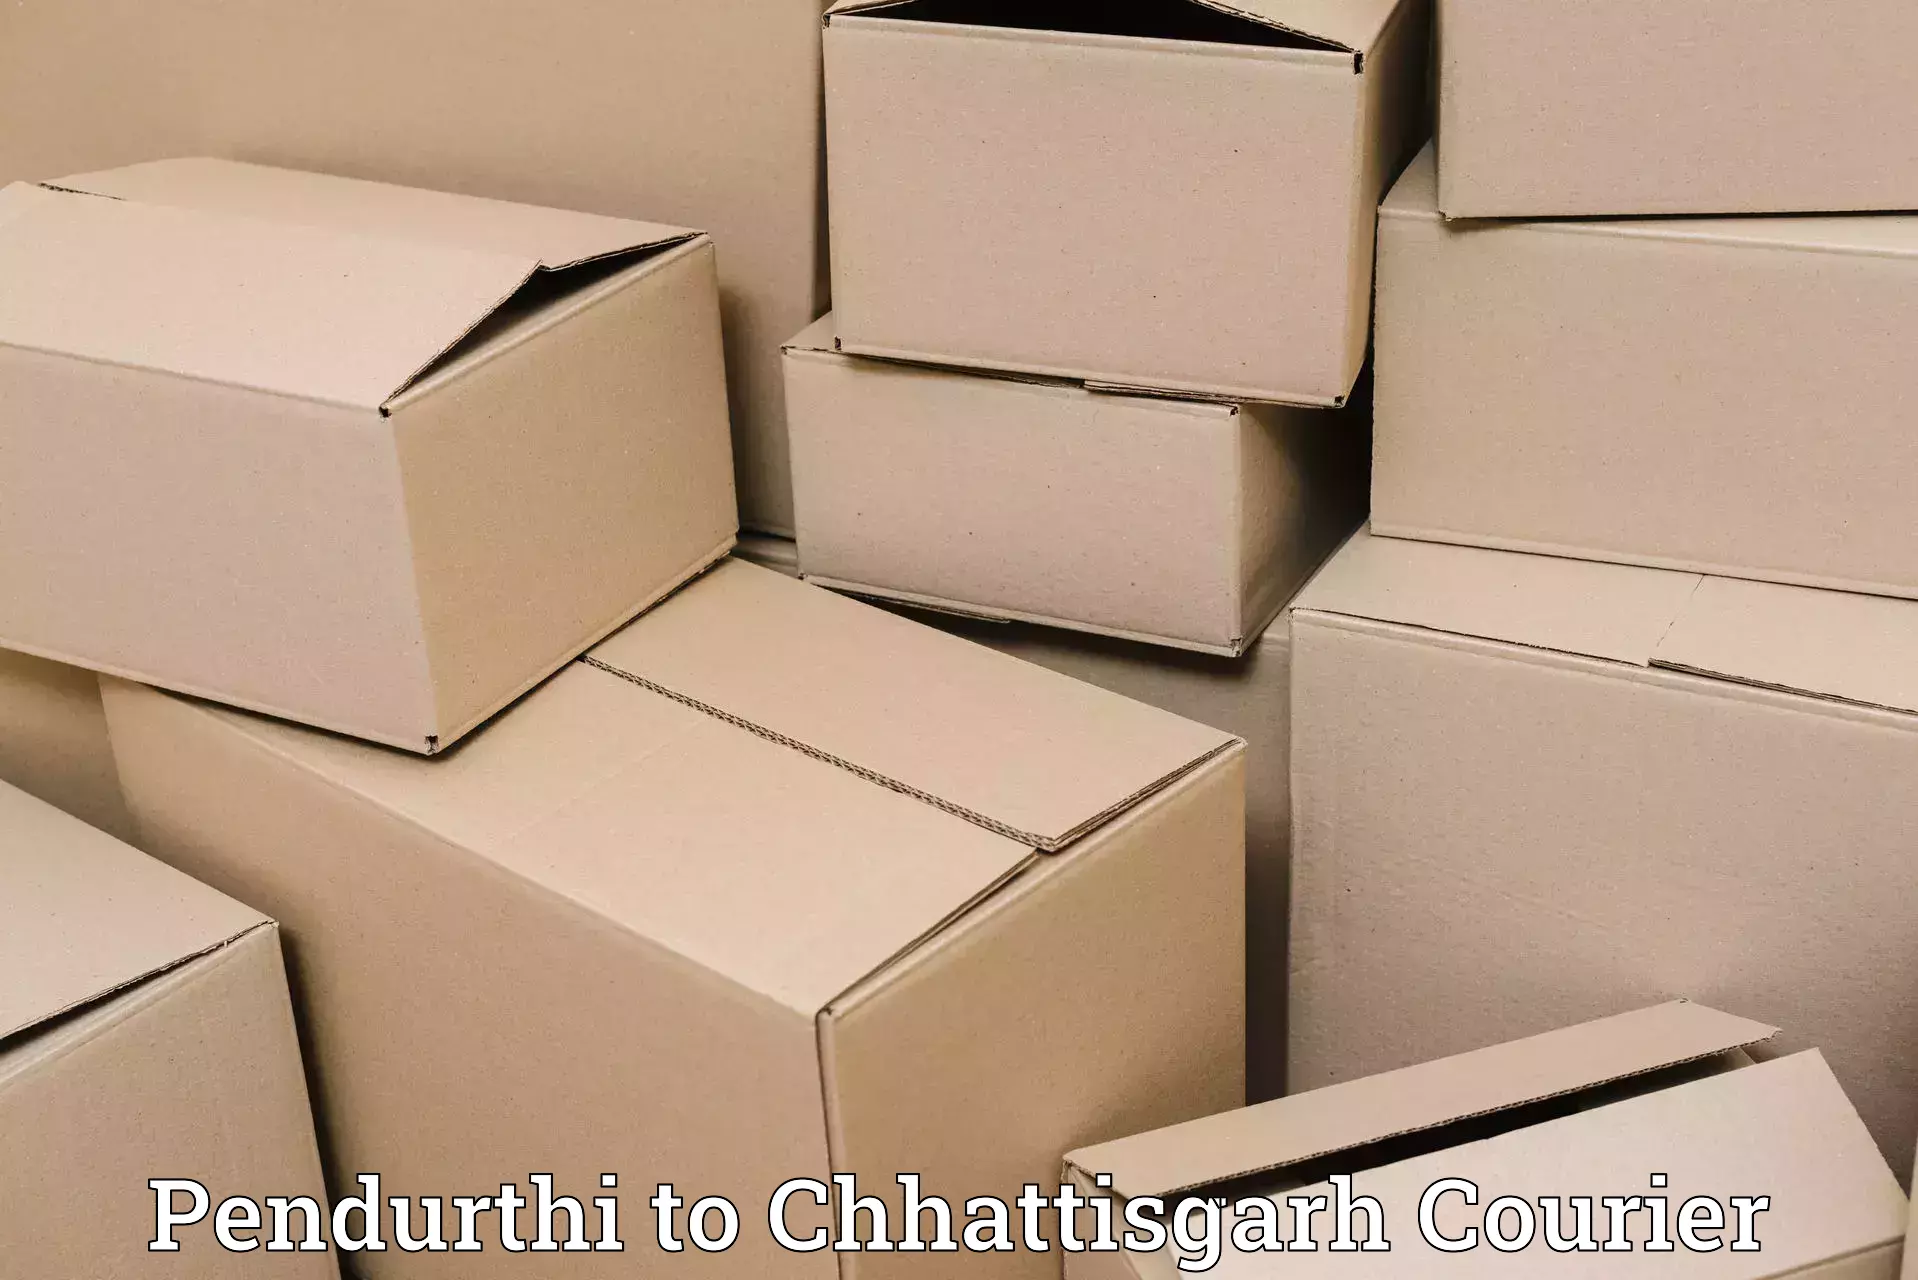 Logistics service provider Pendurthi to Chhattisgarh